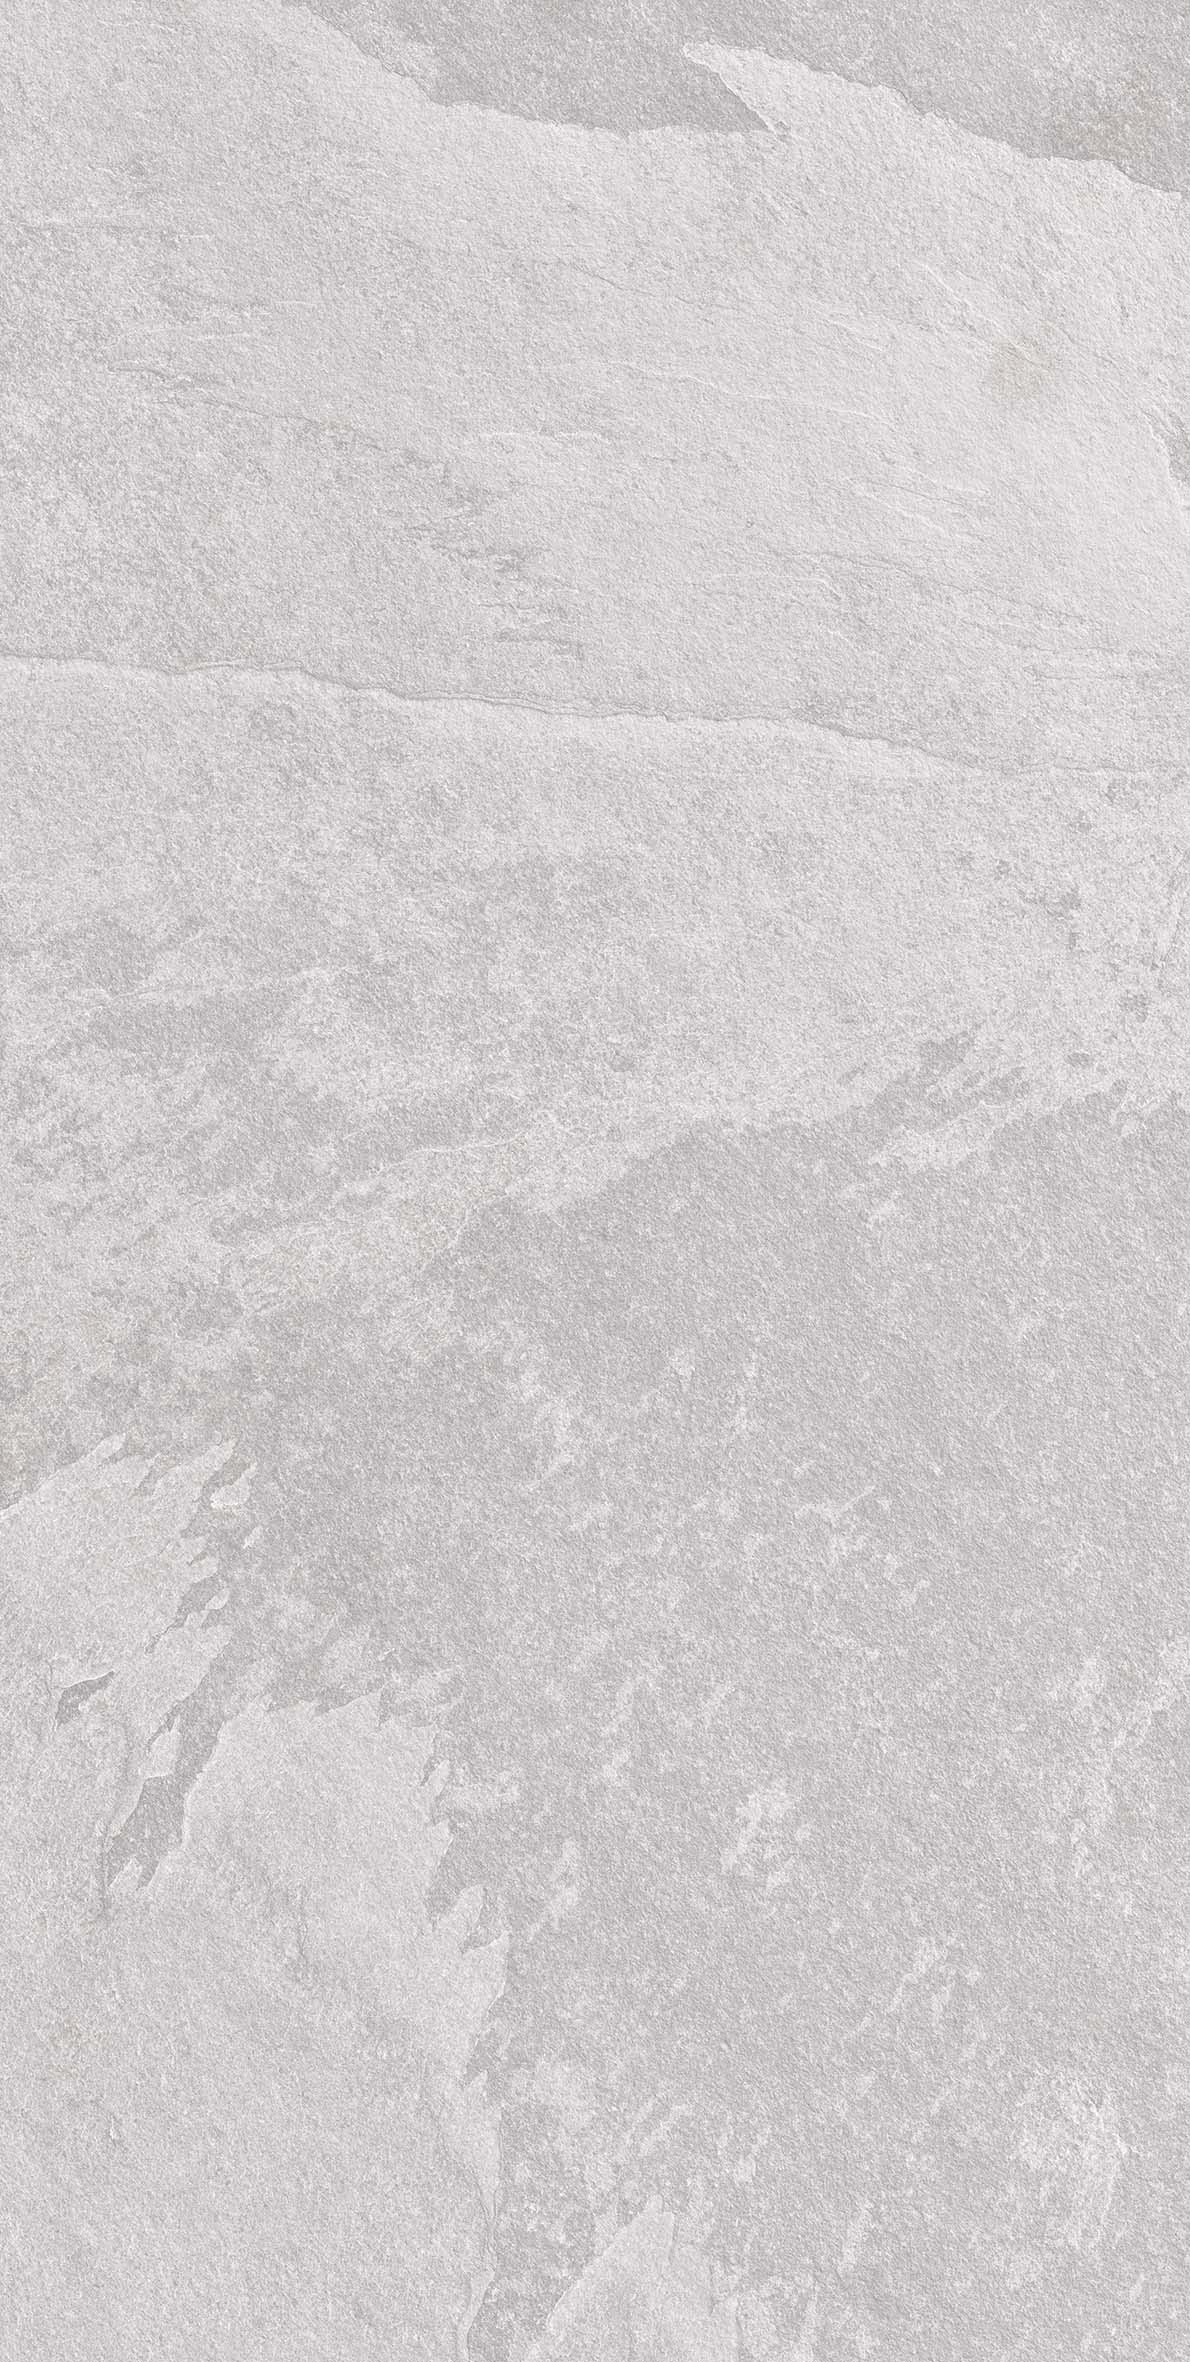 59777 Напольный Rock Grey Stonelo Premium Strukture Fusion (карвинг с металлизированными прожилками) - фото 5